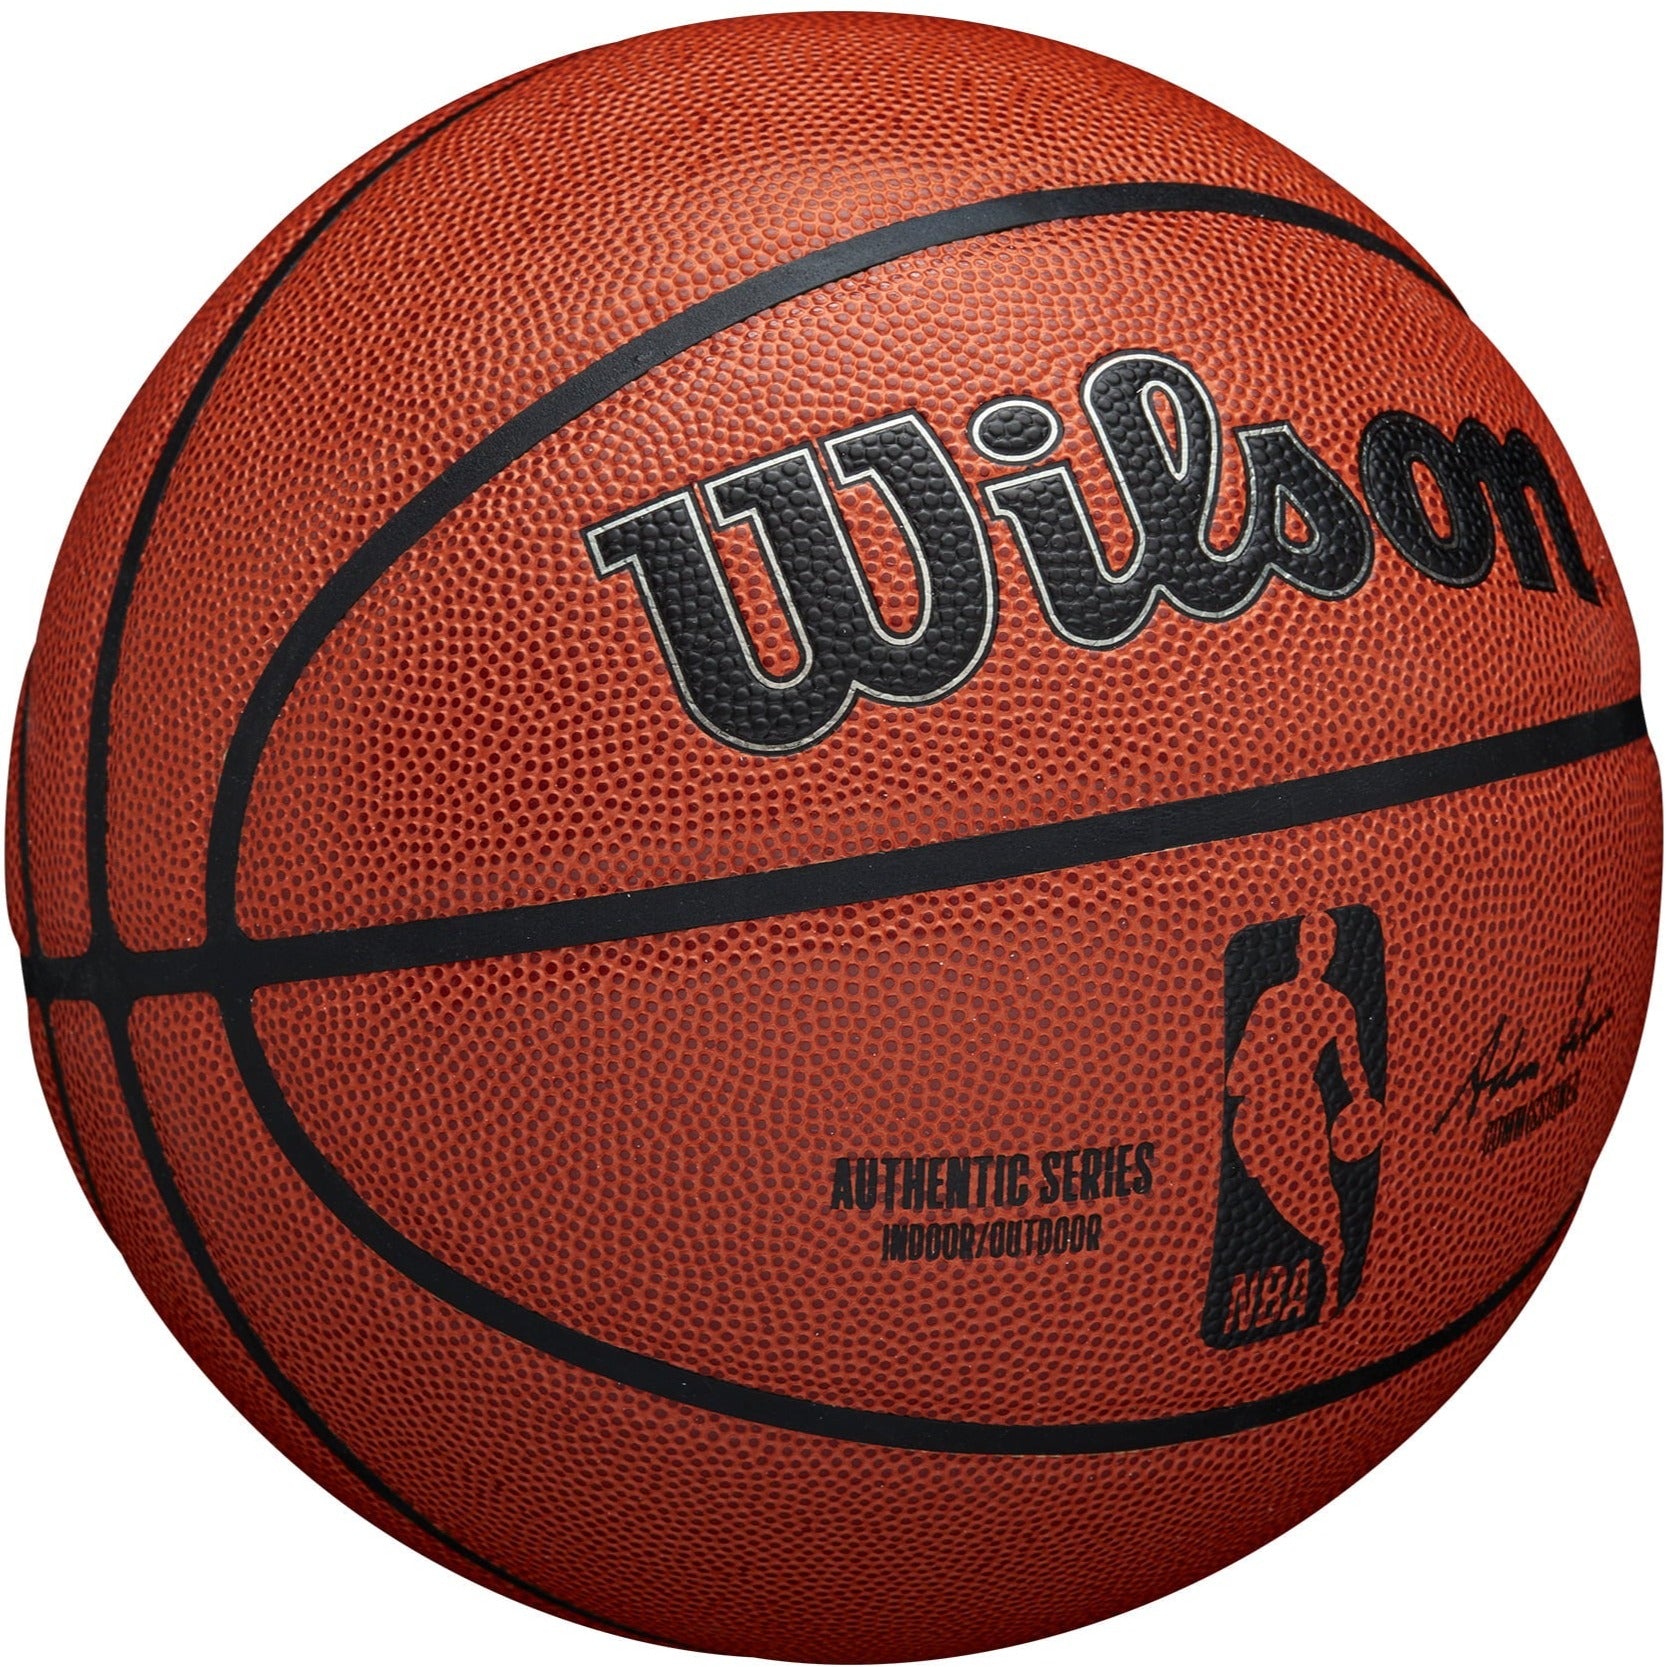 BALON WILSON NBA